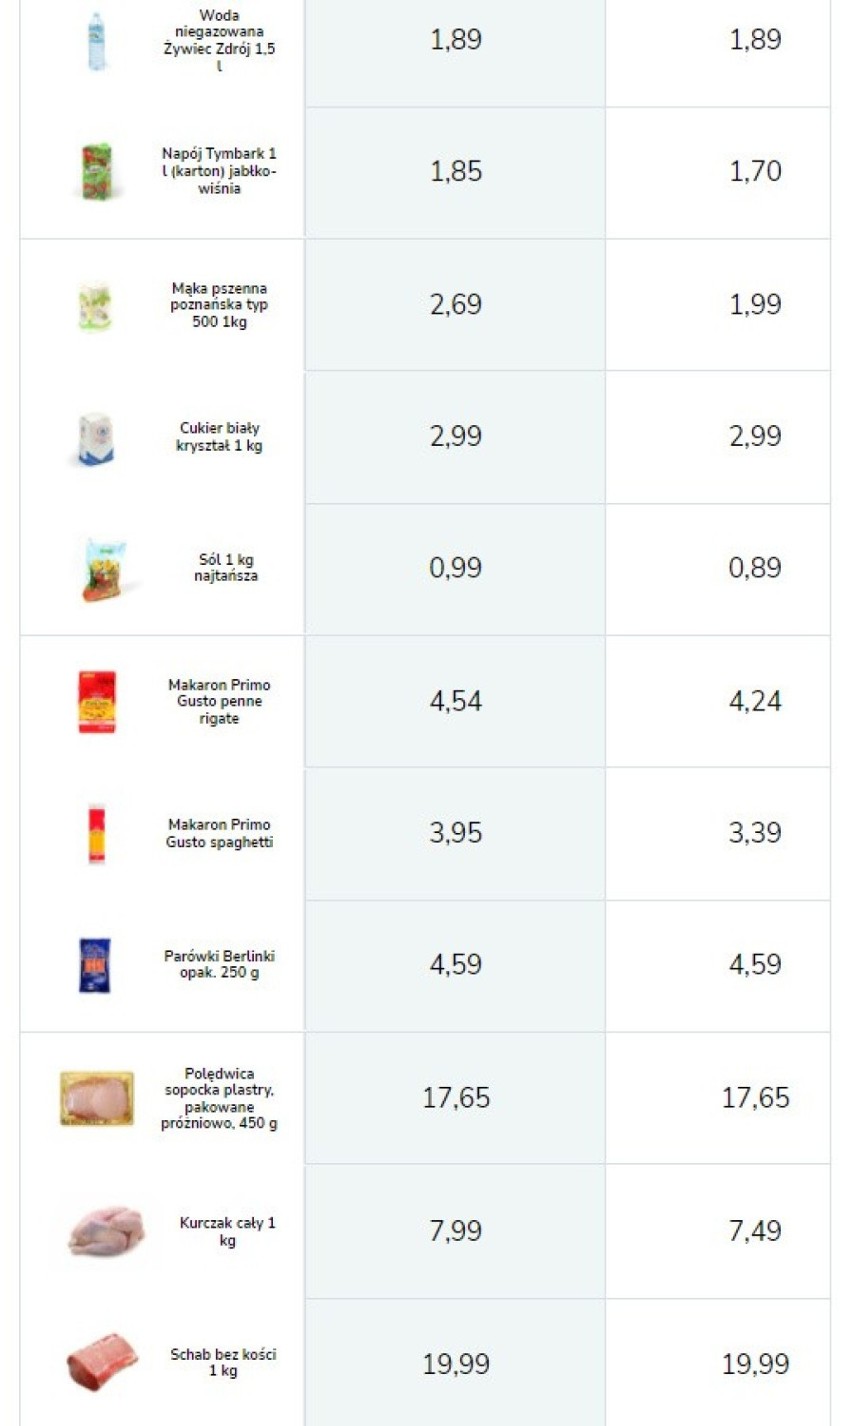 Przykładowe ceny produktów w sklepach Aldi.